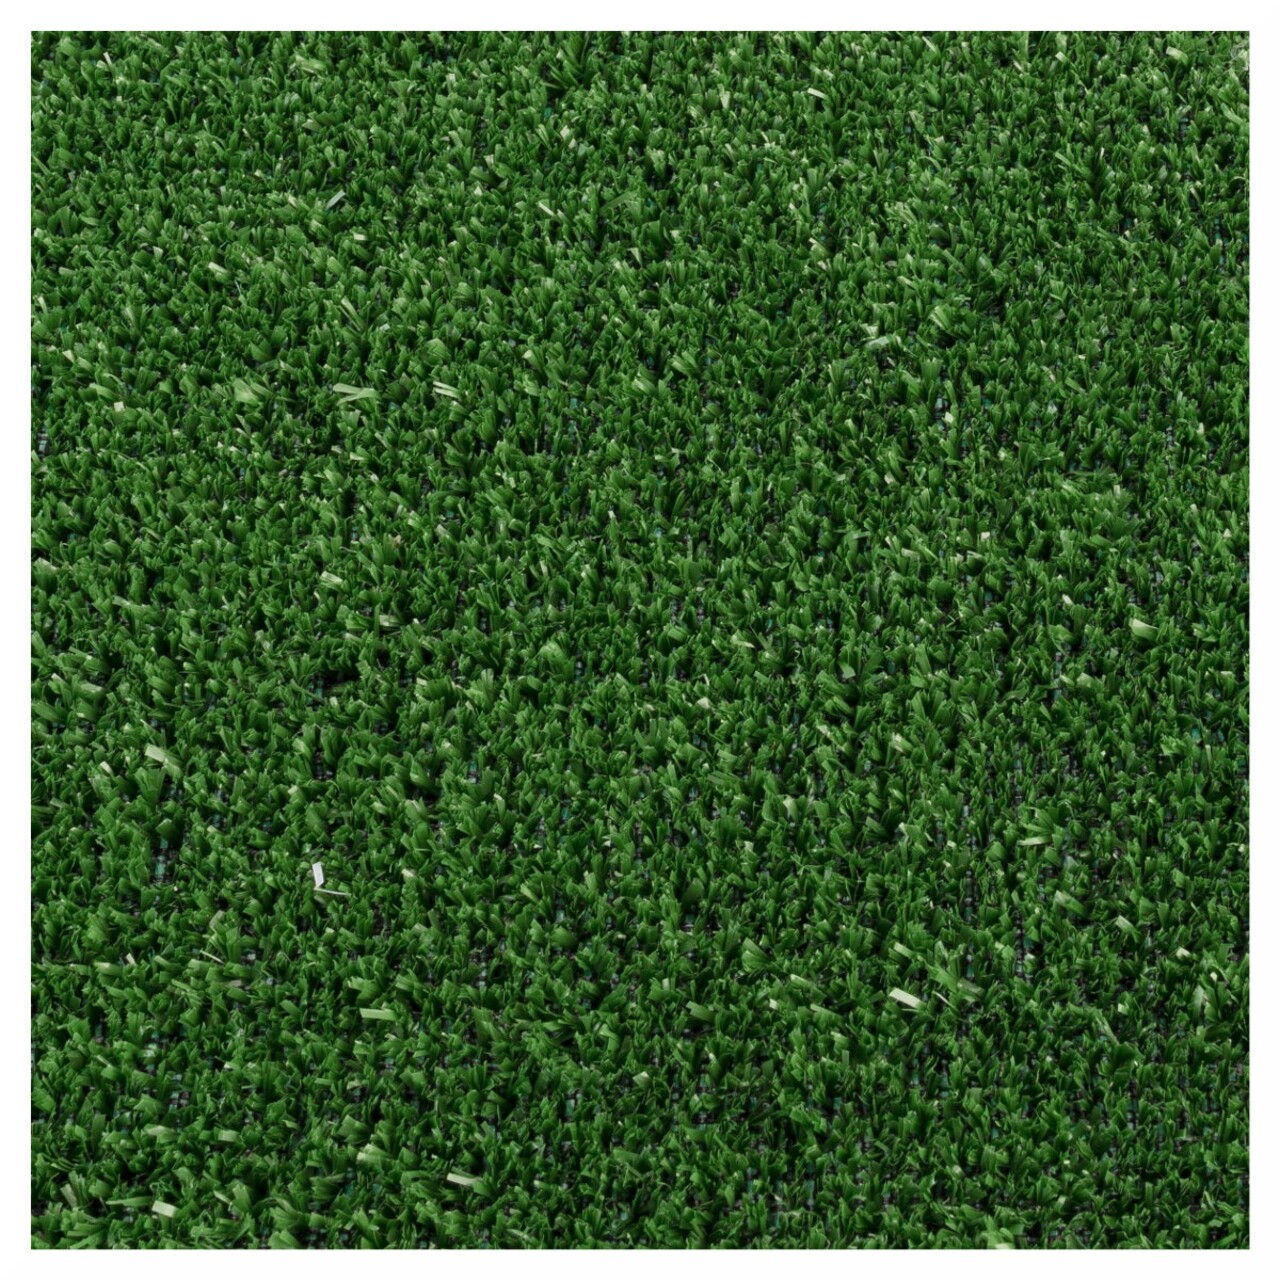 Gazon Artificial Evergreen 5 Mm, Decorino, 133x800 Cm, Polipropilena, Verde